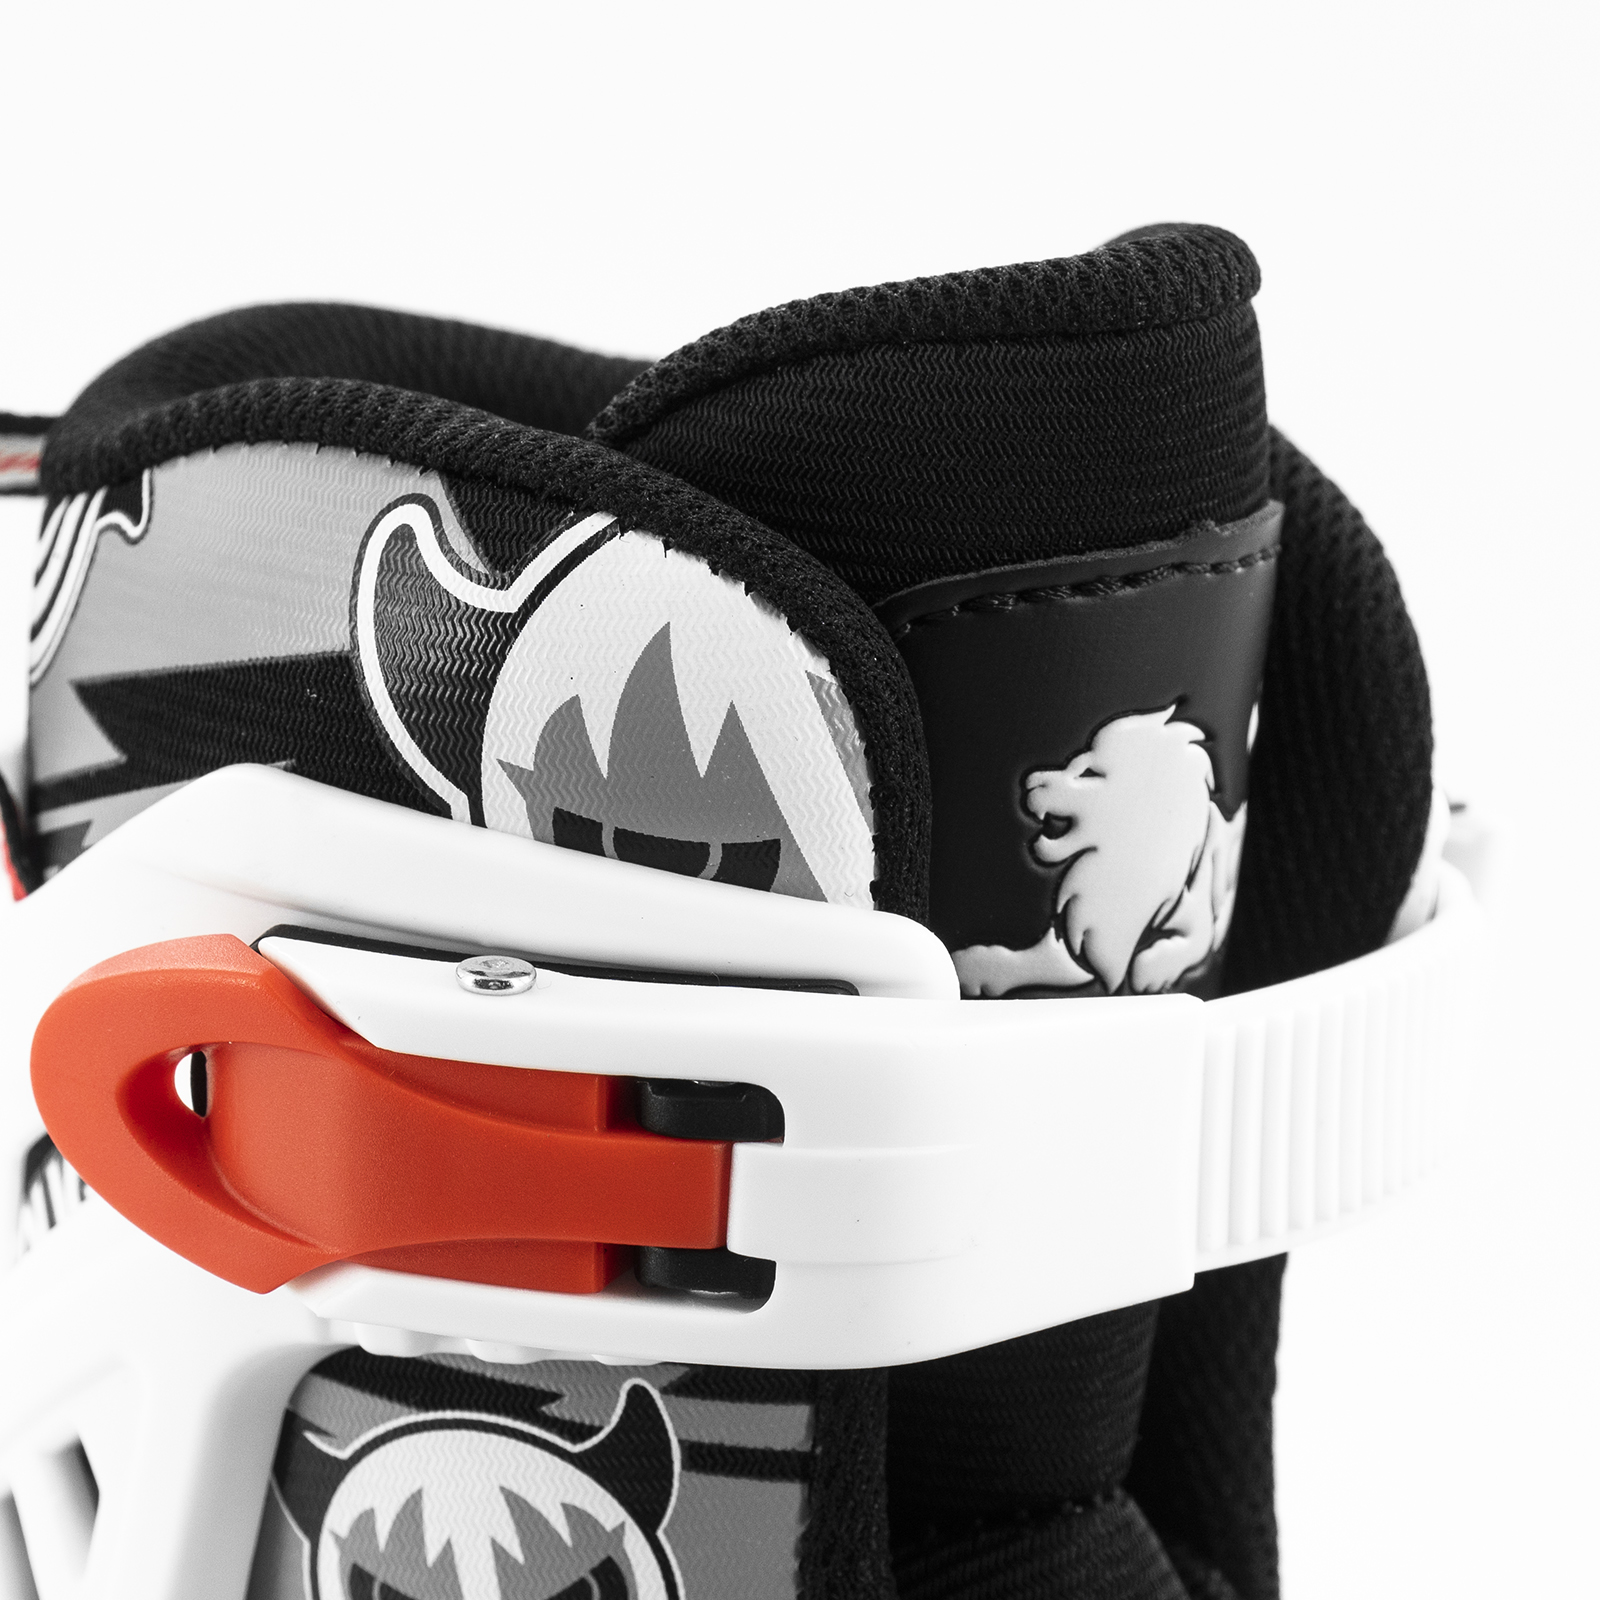 Giày Patin COUGAR Pro hàng chính hãng cao cấp có thể tháo boot ra để giặt bánh cao su đặc dành cho bé từ 3 tuổi đến 15 tuổi trò chơi lành mạnh giúp bé tăng cường sức khoẻ phát triển chiều cao